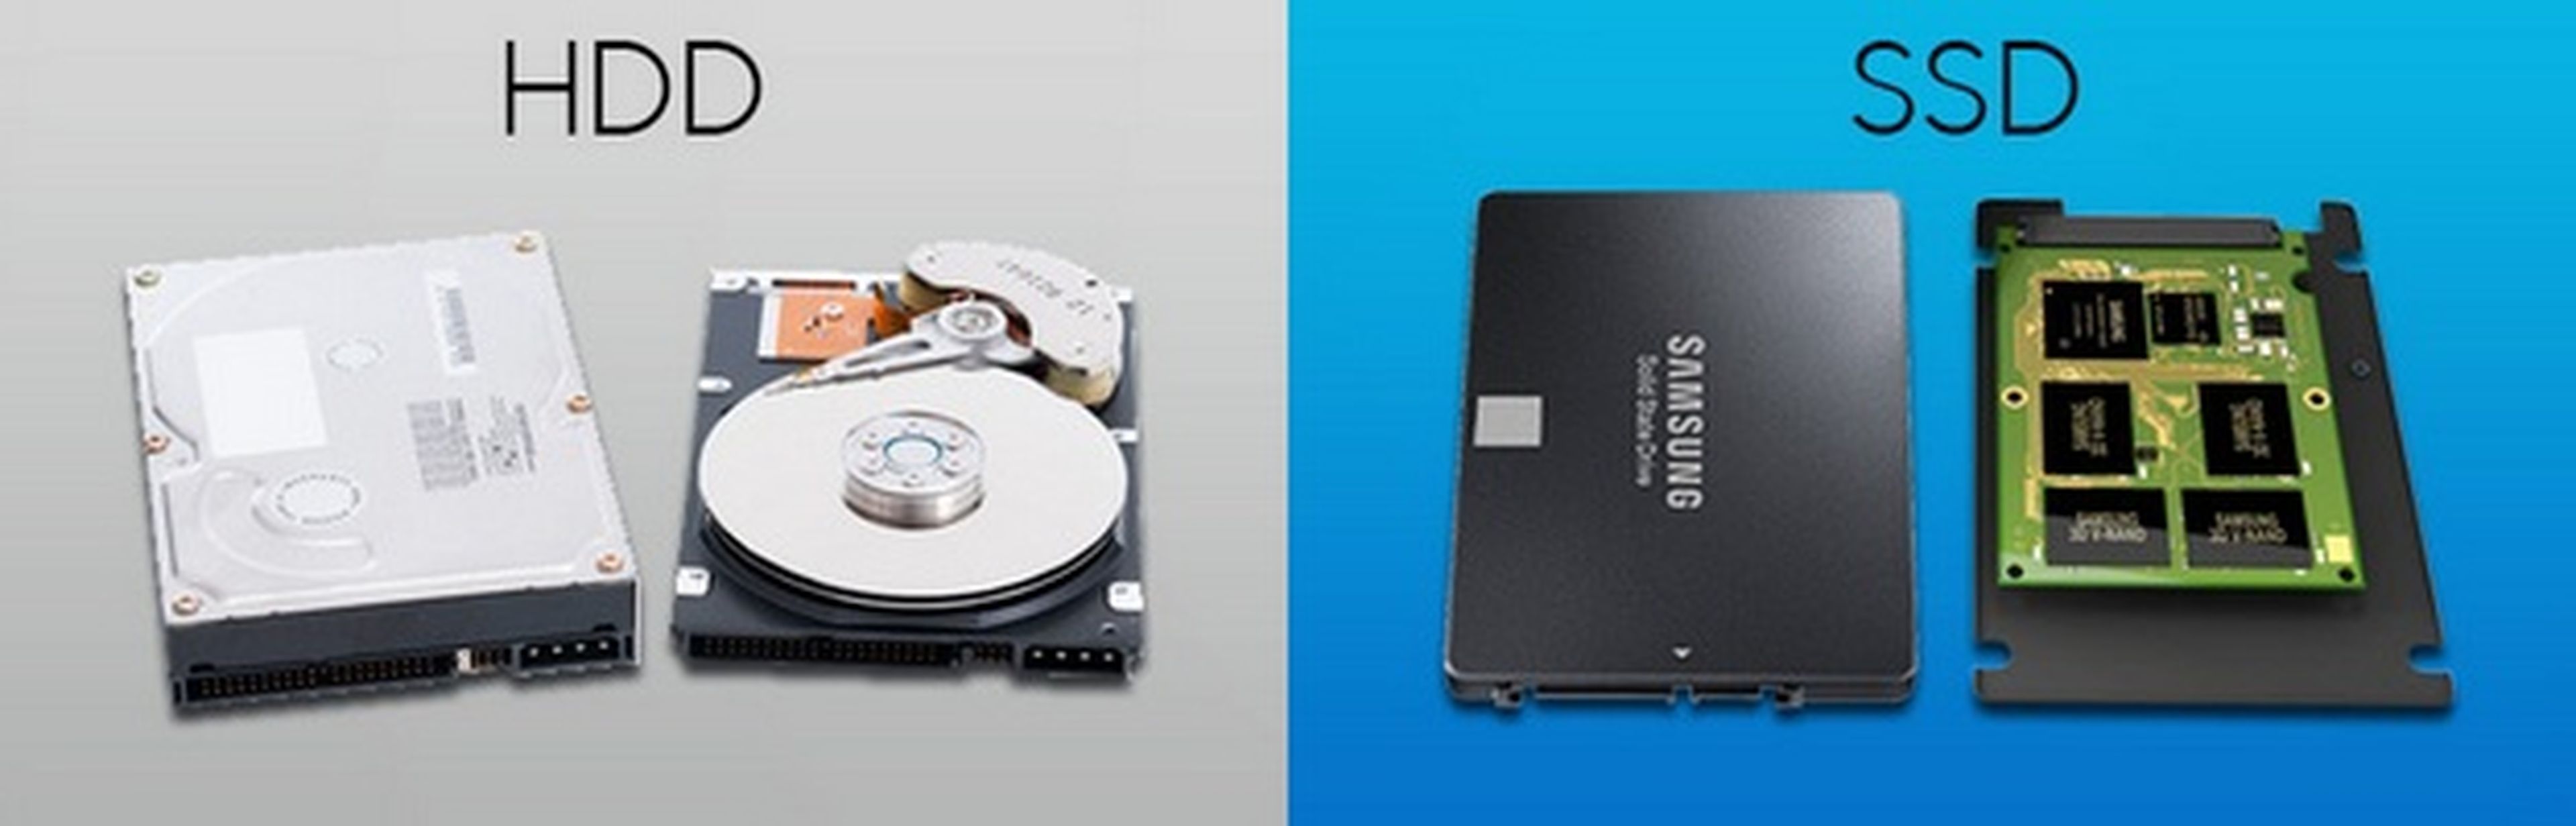 ¿Qué es más importante la RAM o el SSD